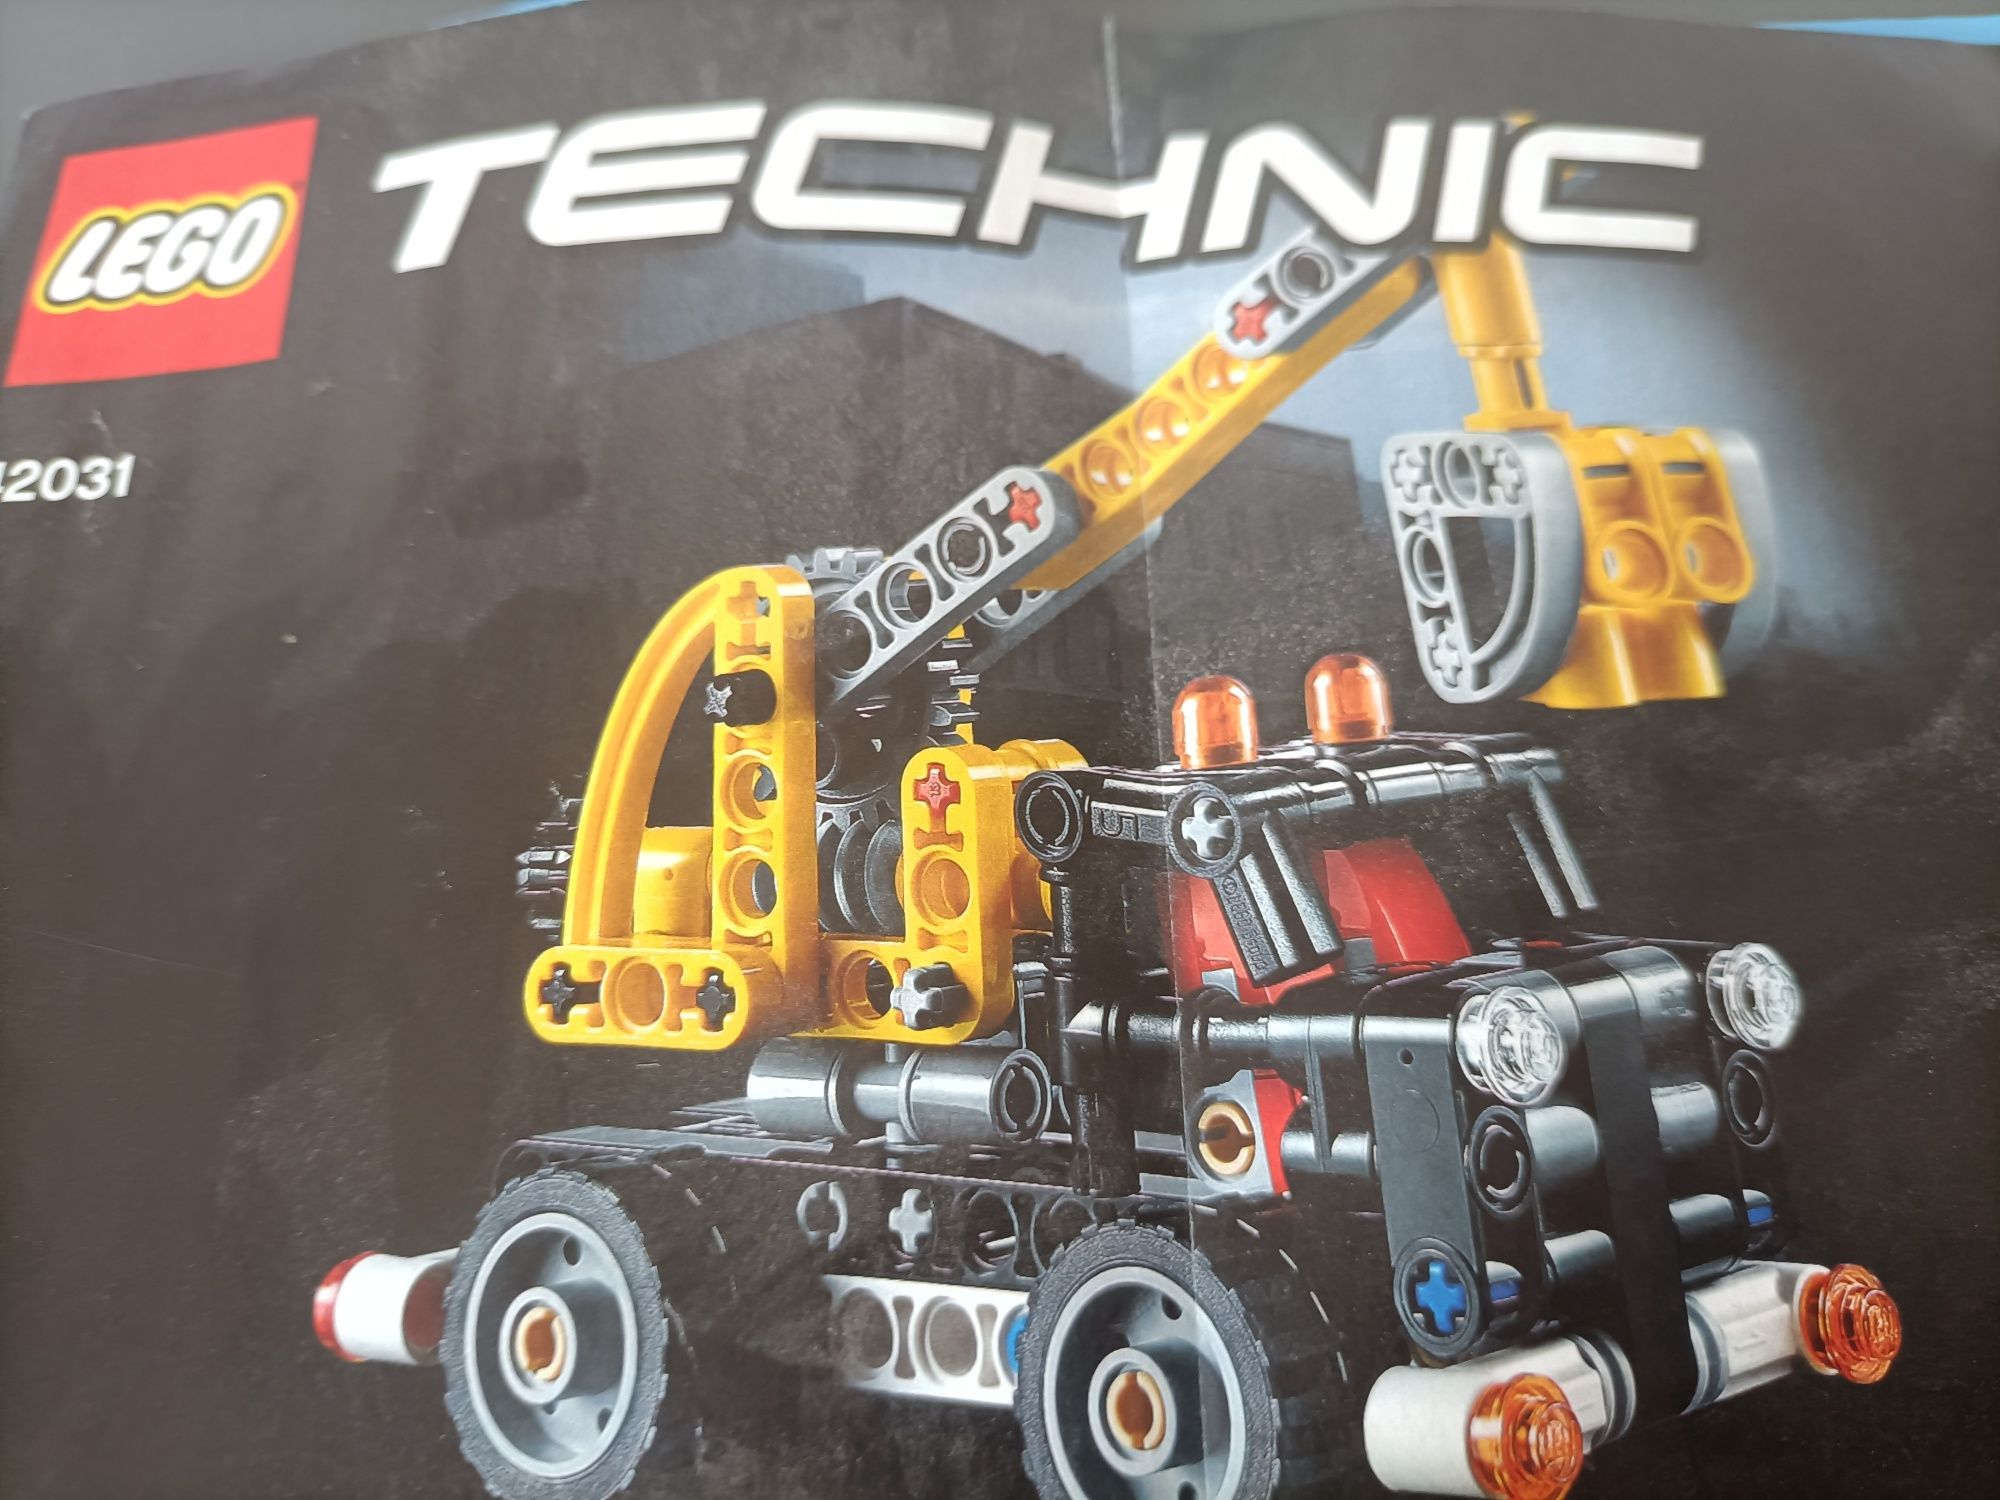 LEGO TECHNIC 42031 Ciężarówka z wysięgnikiem